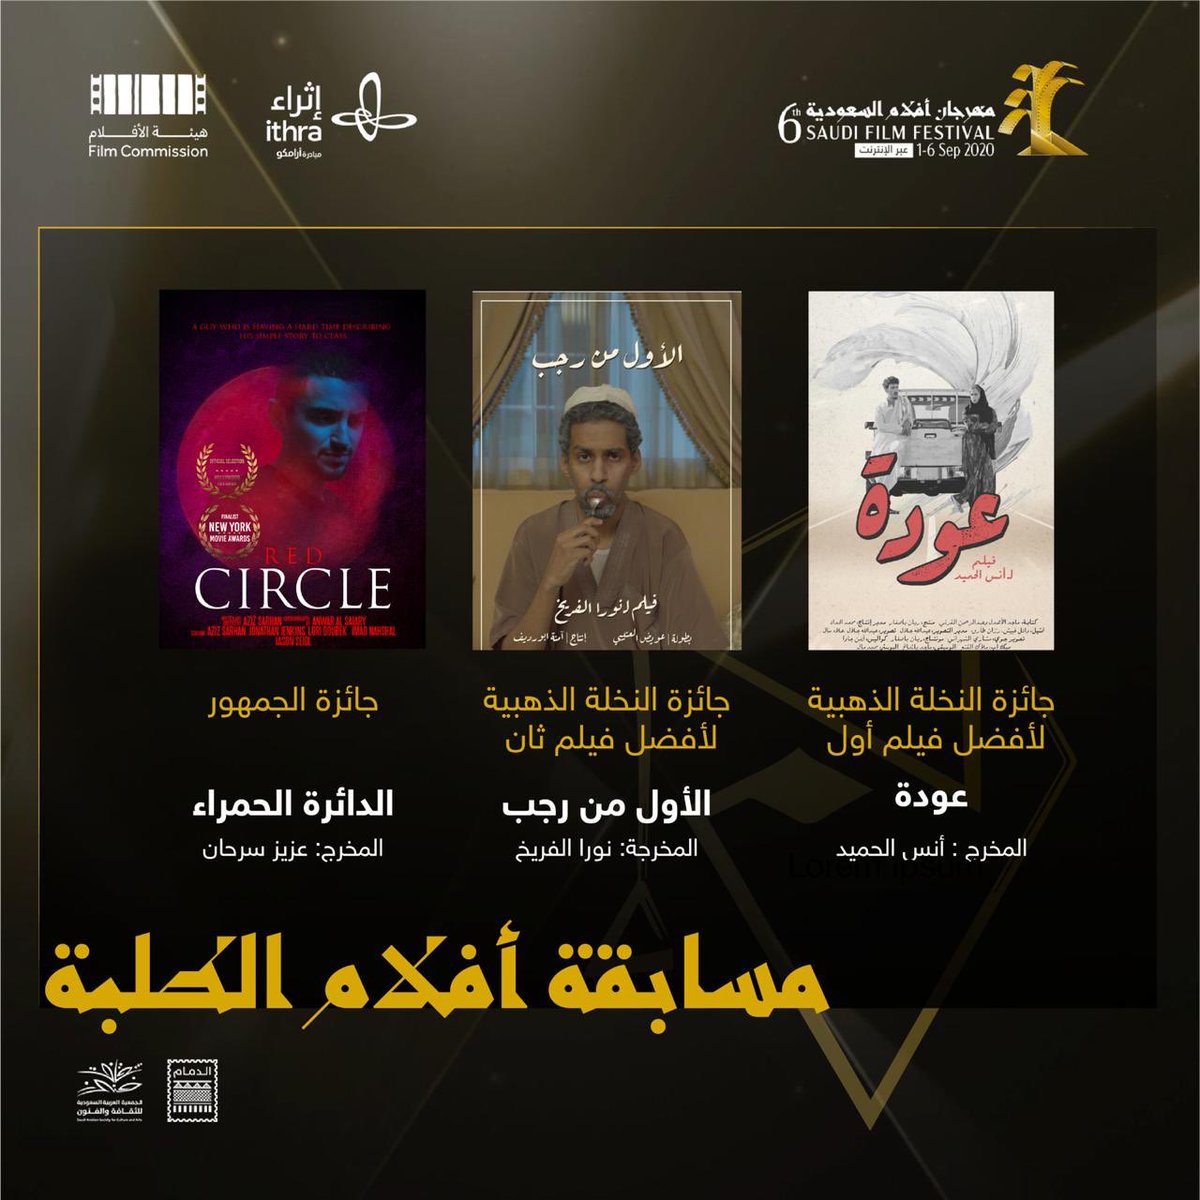 مهرجان أفلام السعودية Sa Filmfestival Twitter